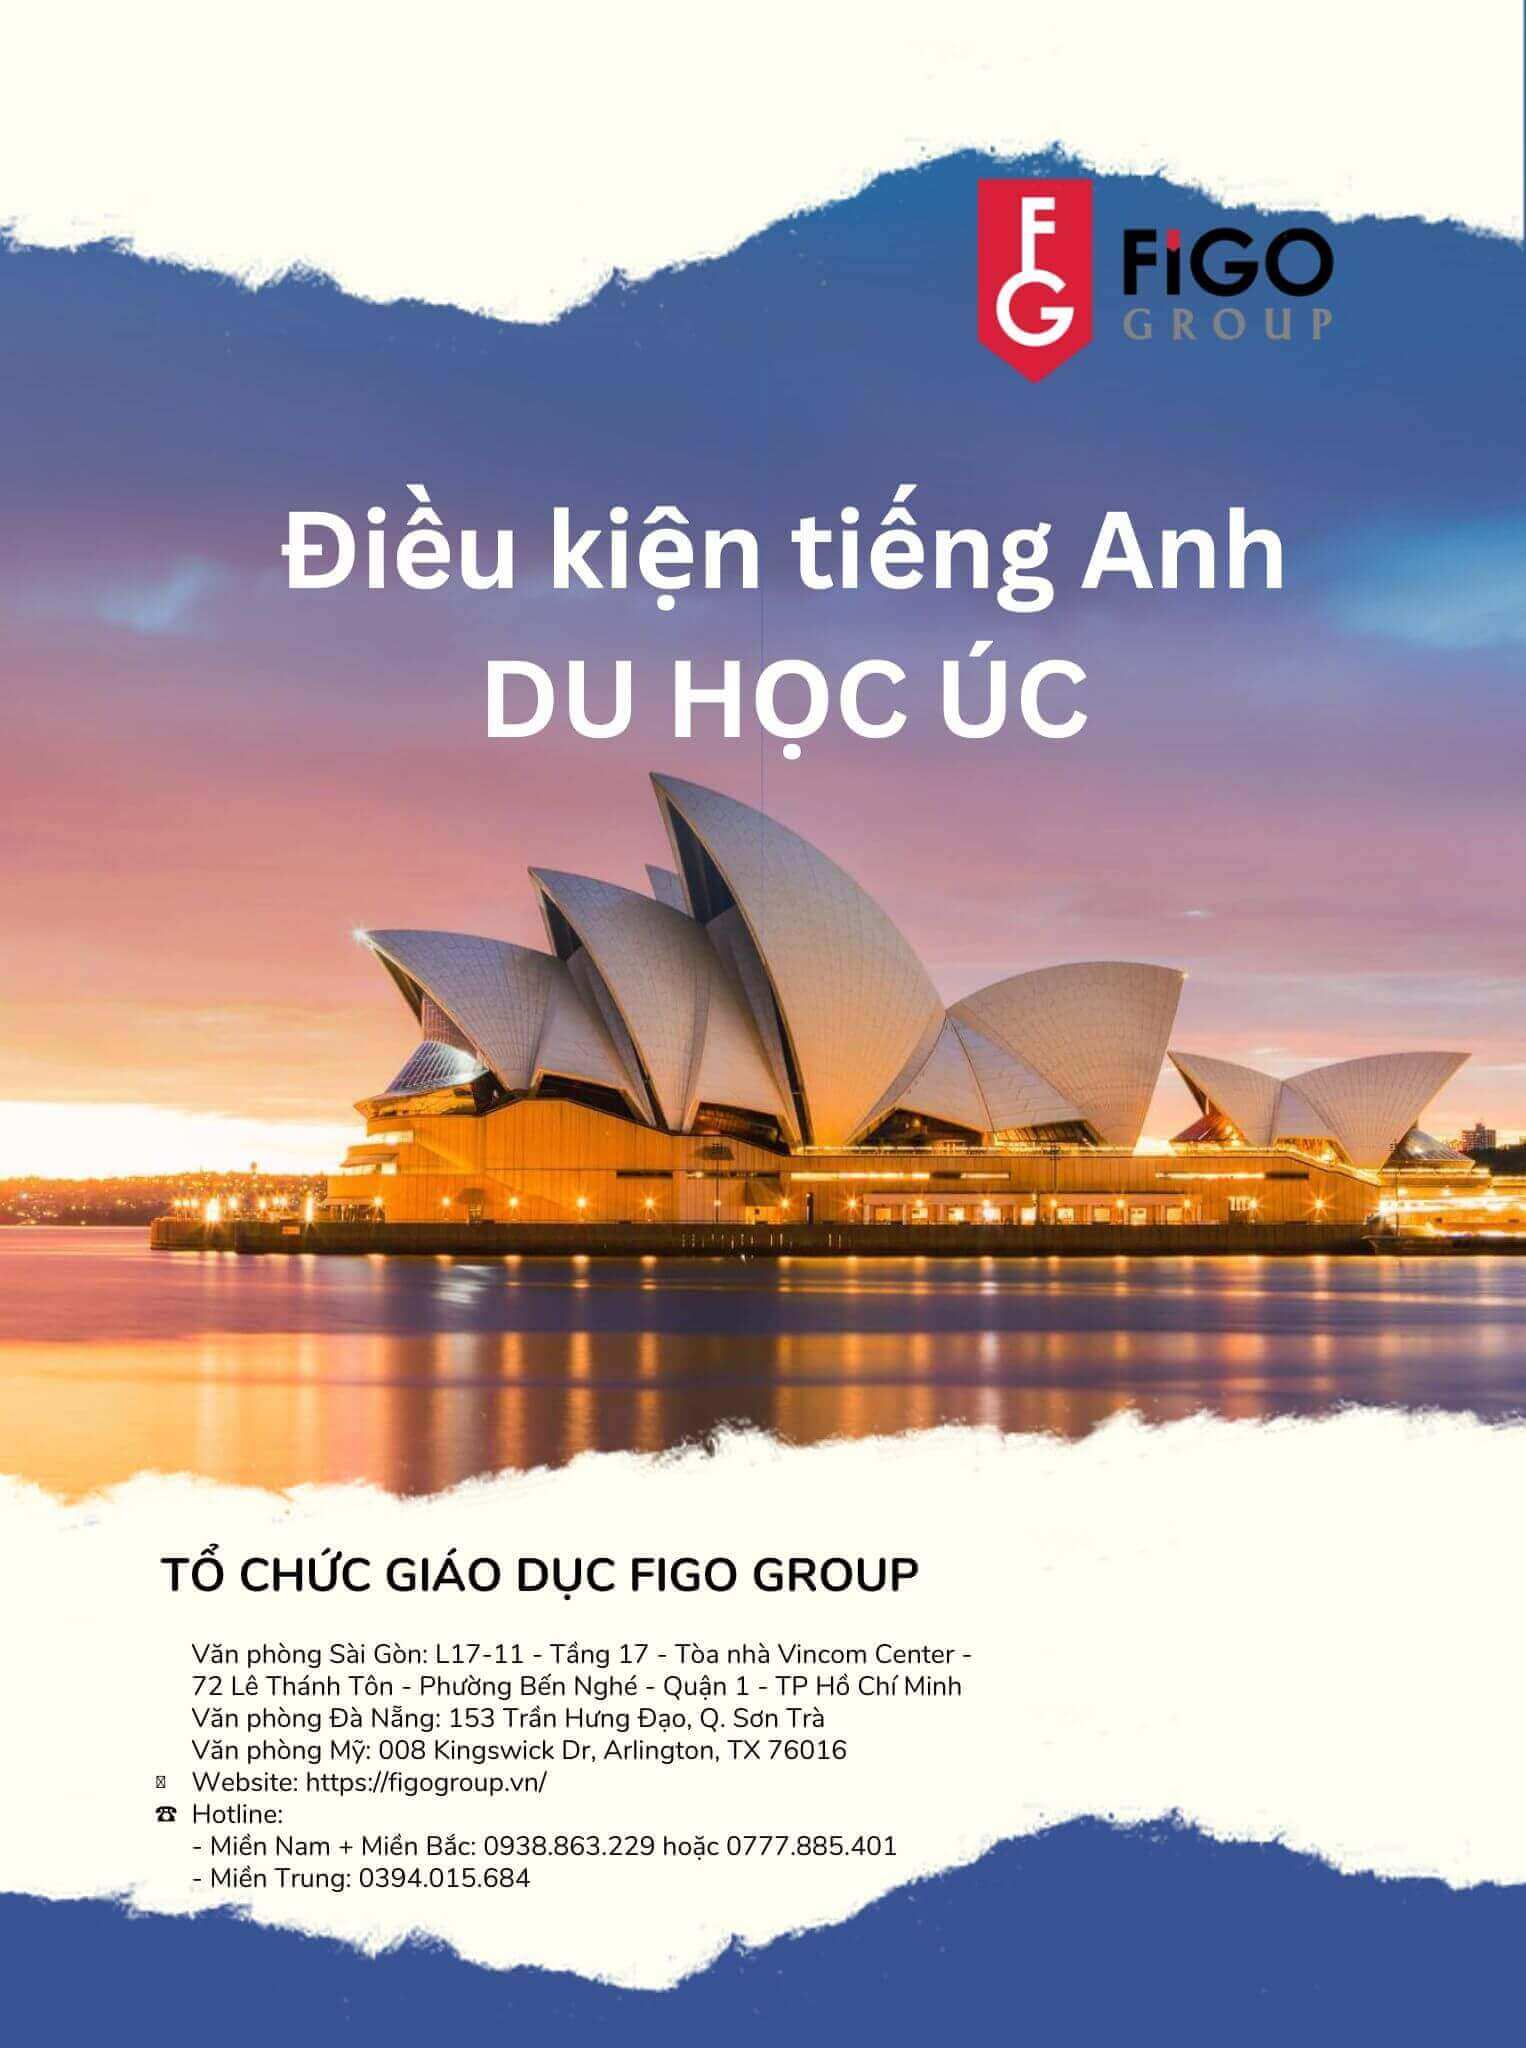 Tiếng Anh du học Úc: 5 điều HSSV Việt Nam cần biết